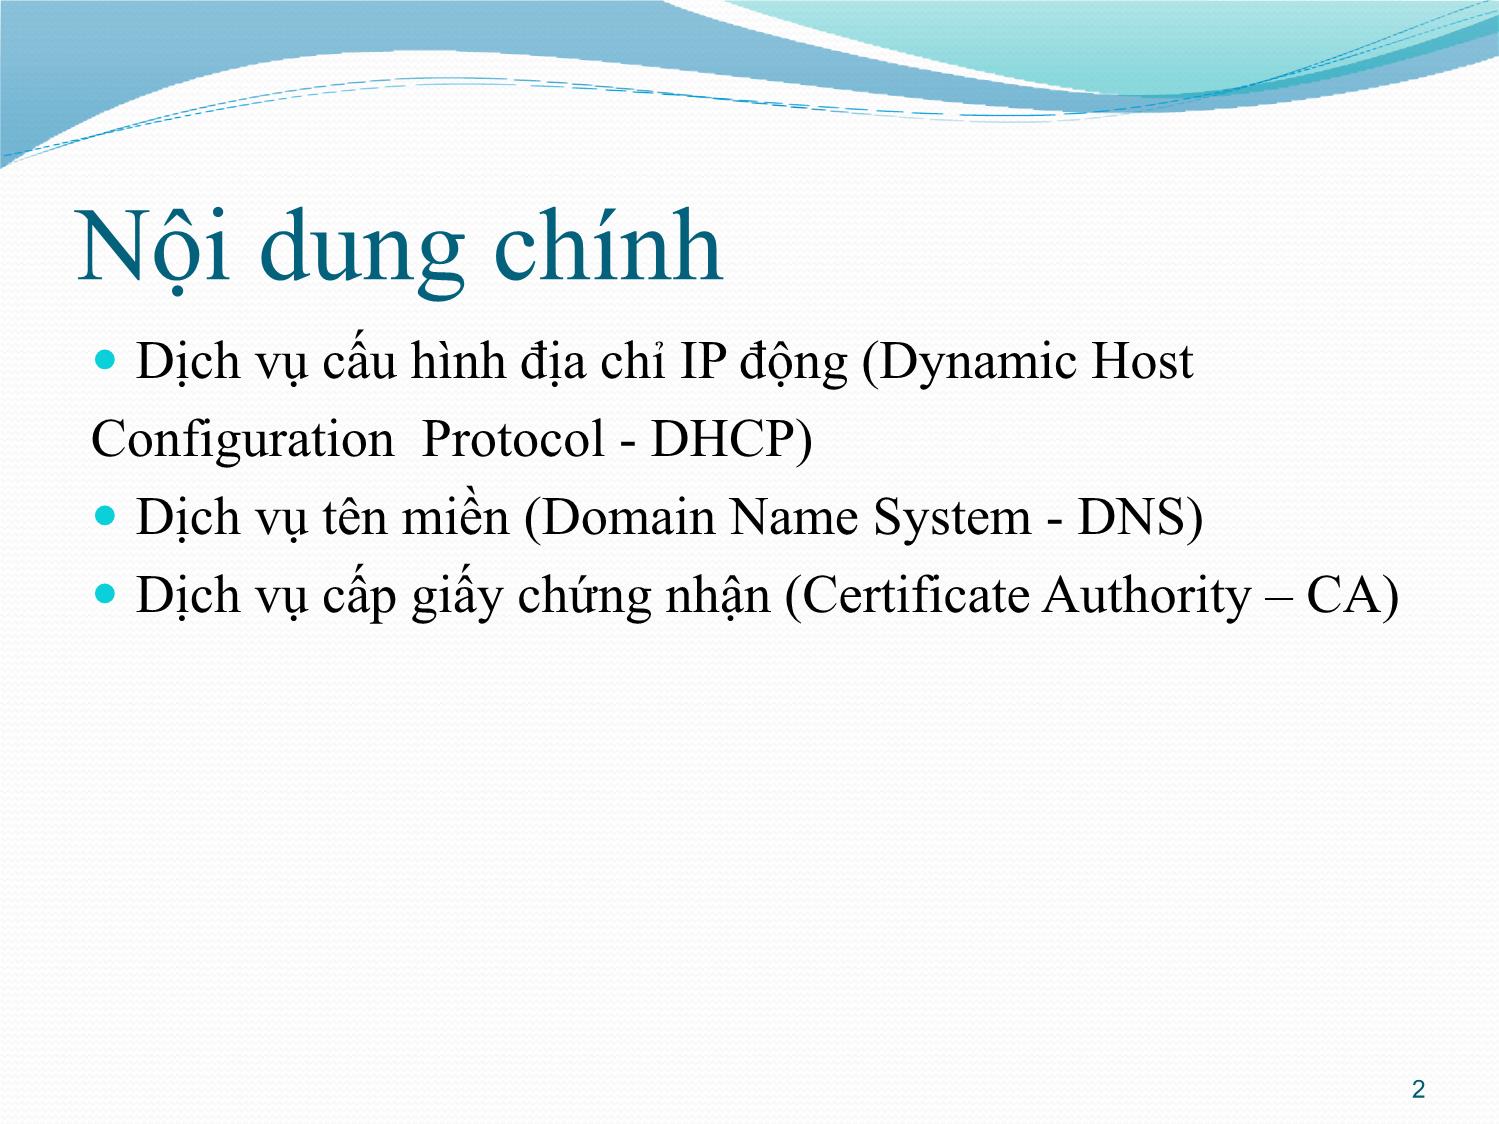 Bài giảng Quản trị mạng - Chương 4: Quản trị cơ sở hạ tầng mạng - Phan Thị Thu Hồng trang 2